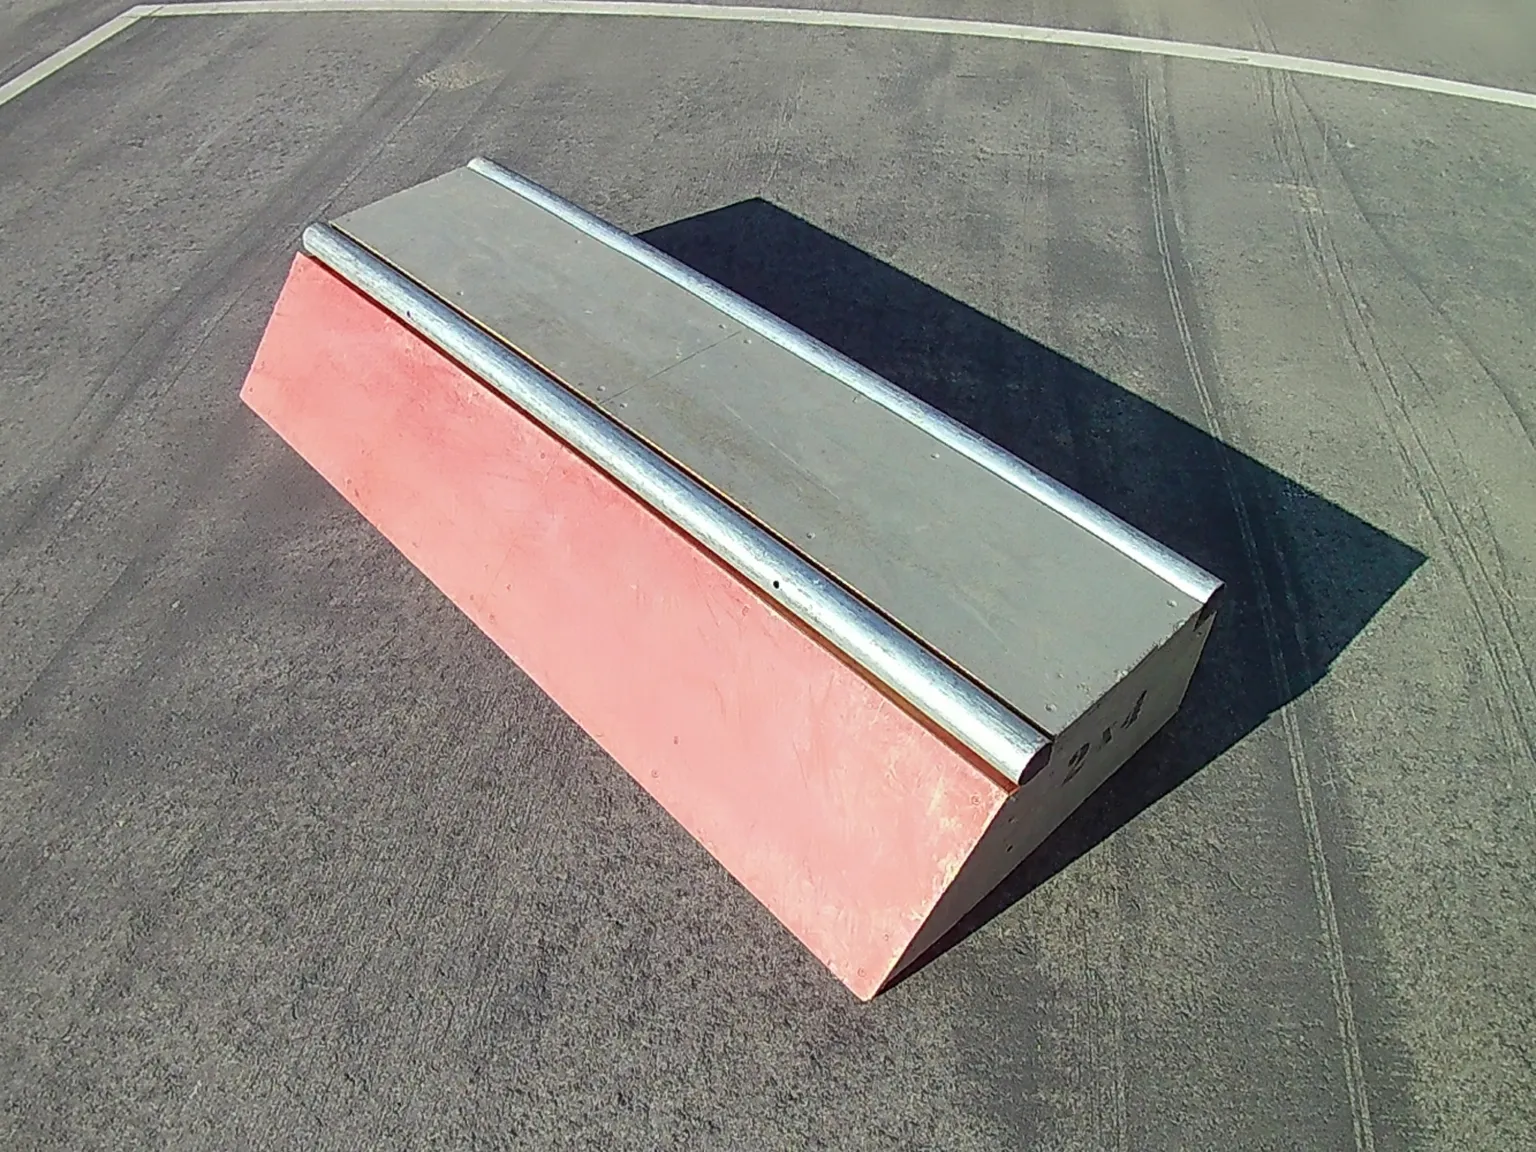 Slappy curb grind box on asphalt, side view